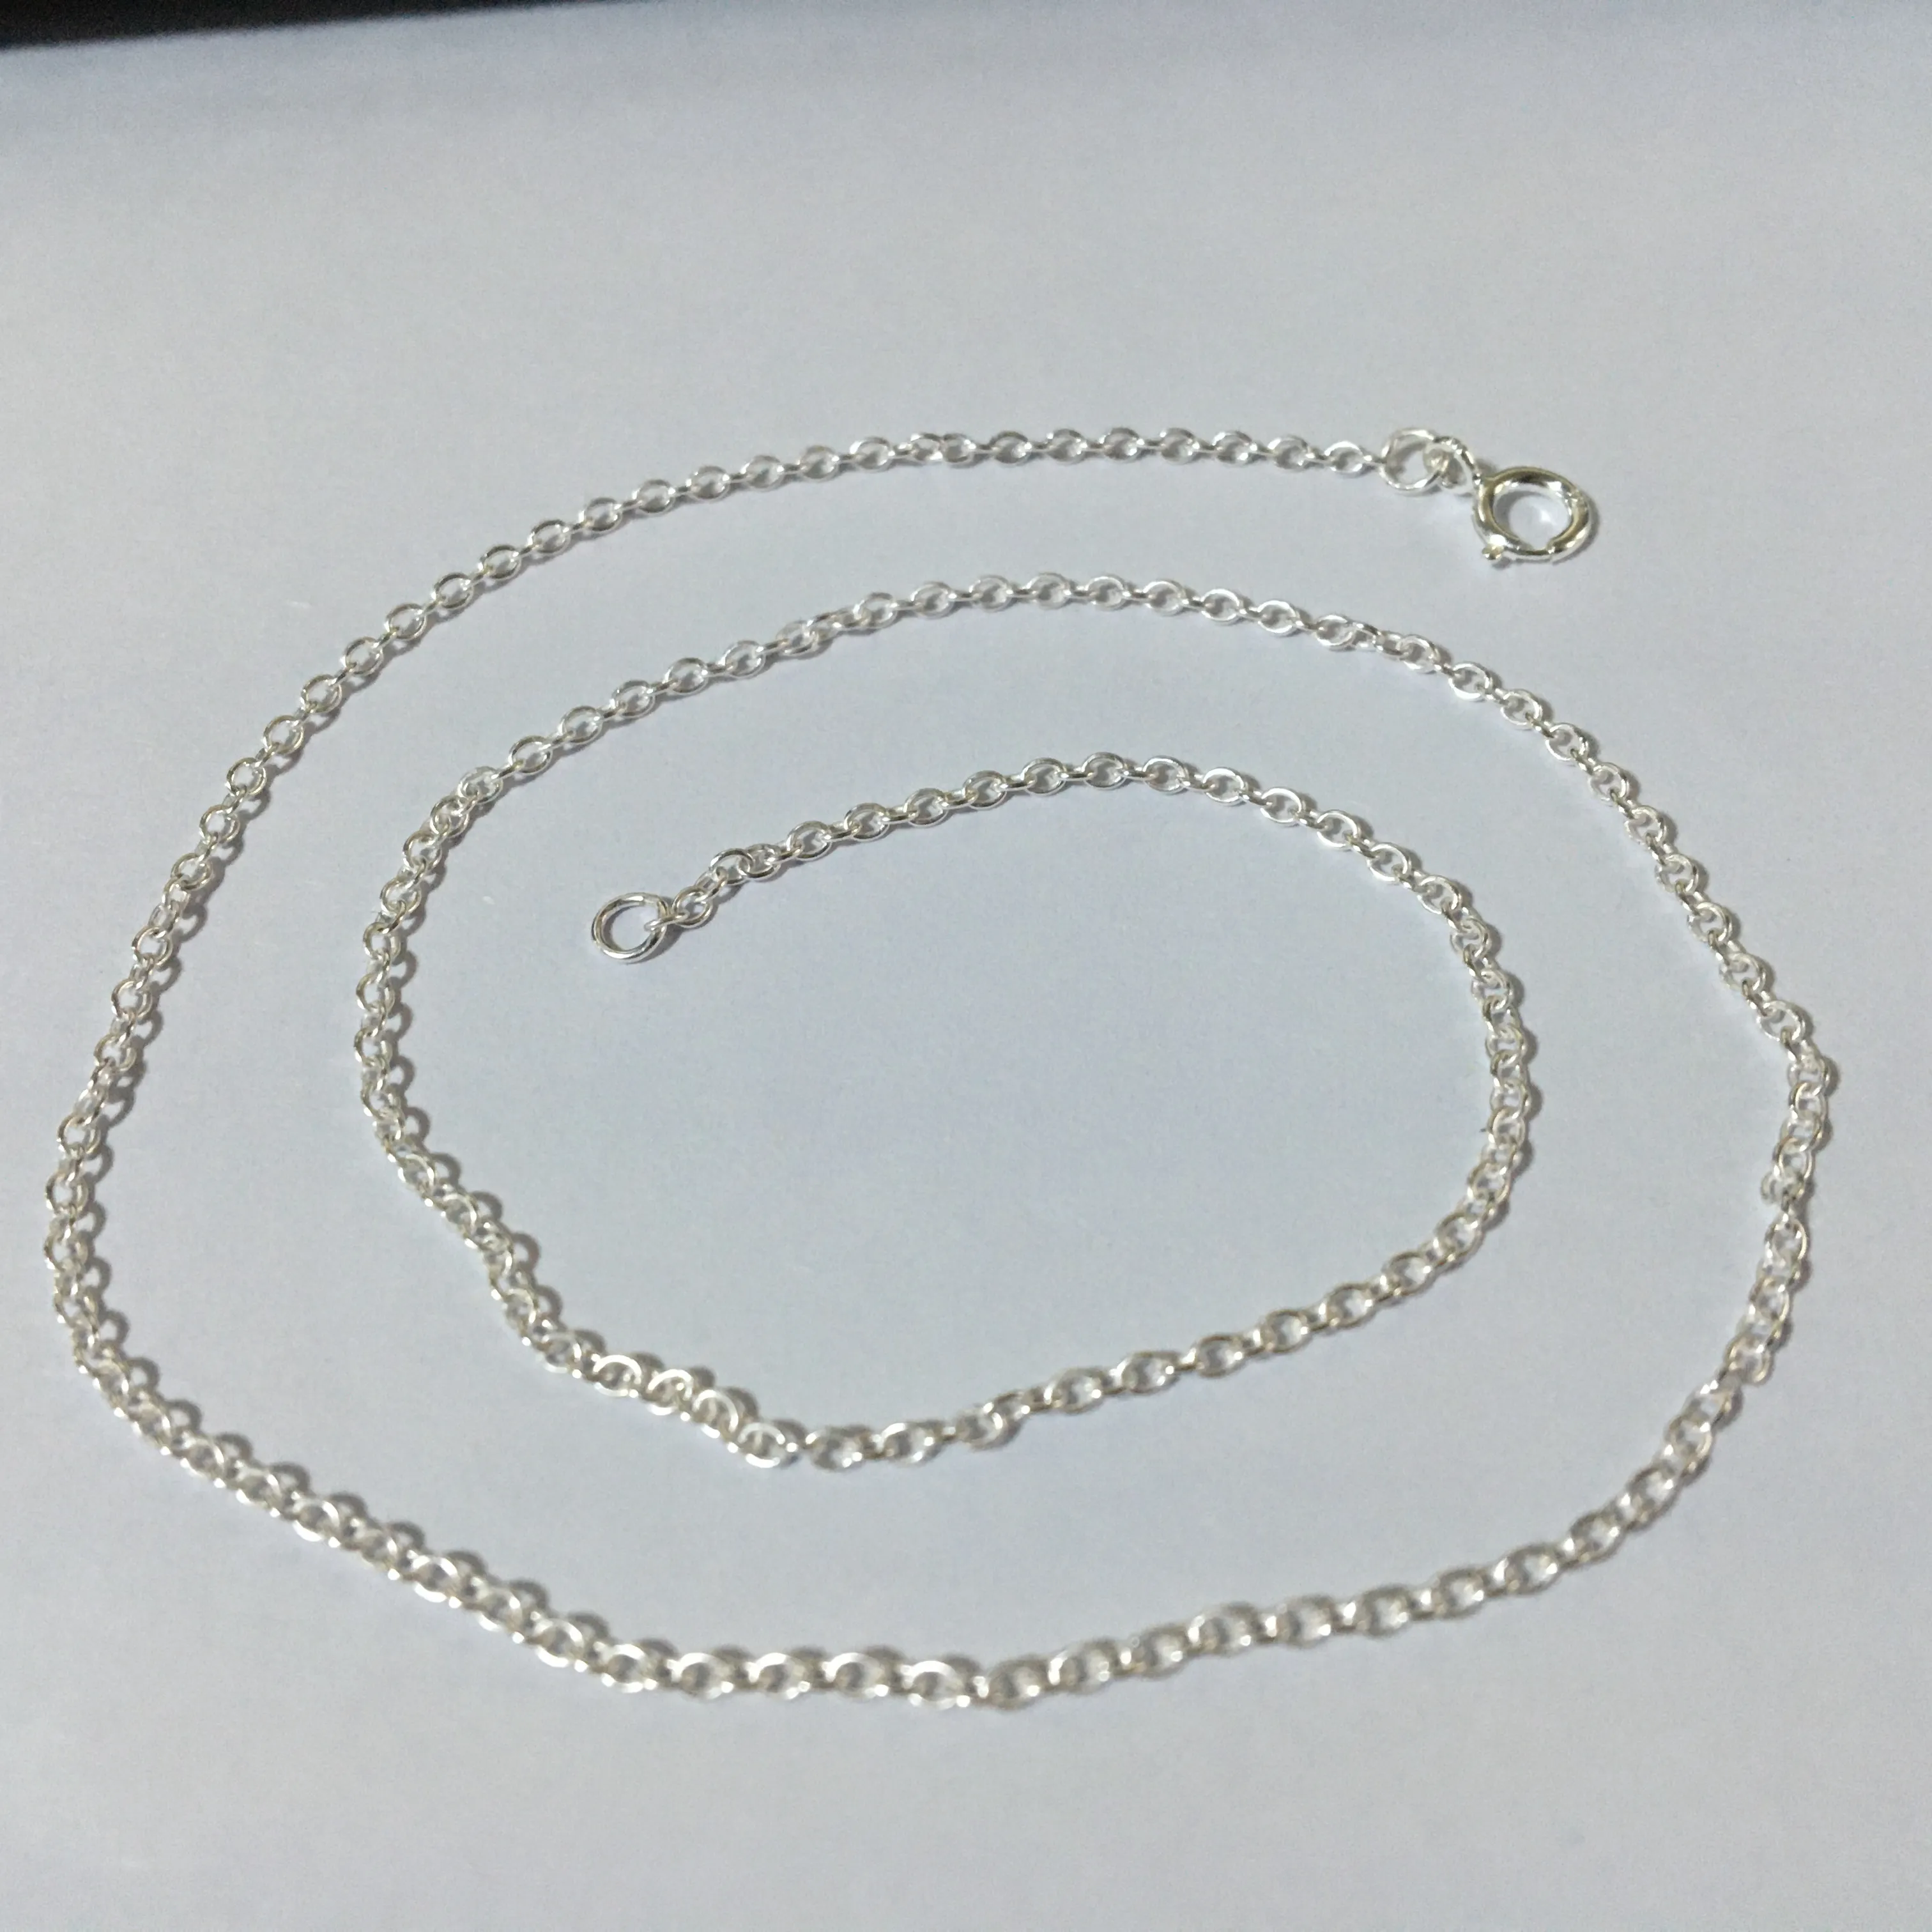 التخصيص نوعية جيدة 925 الايطالية الفضة سلسلة قلادة الصليب كابل سلسلي سلسلة الفضة والمجوهرات